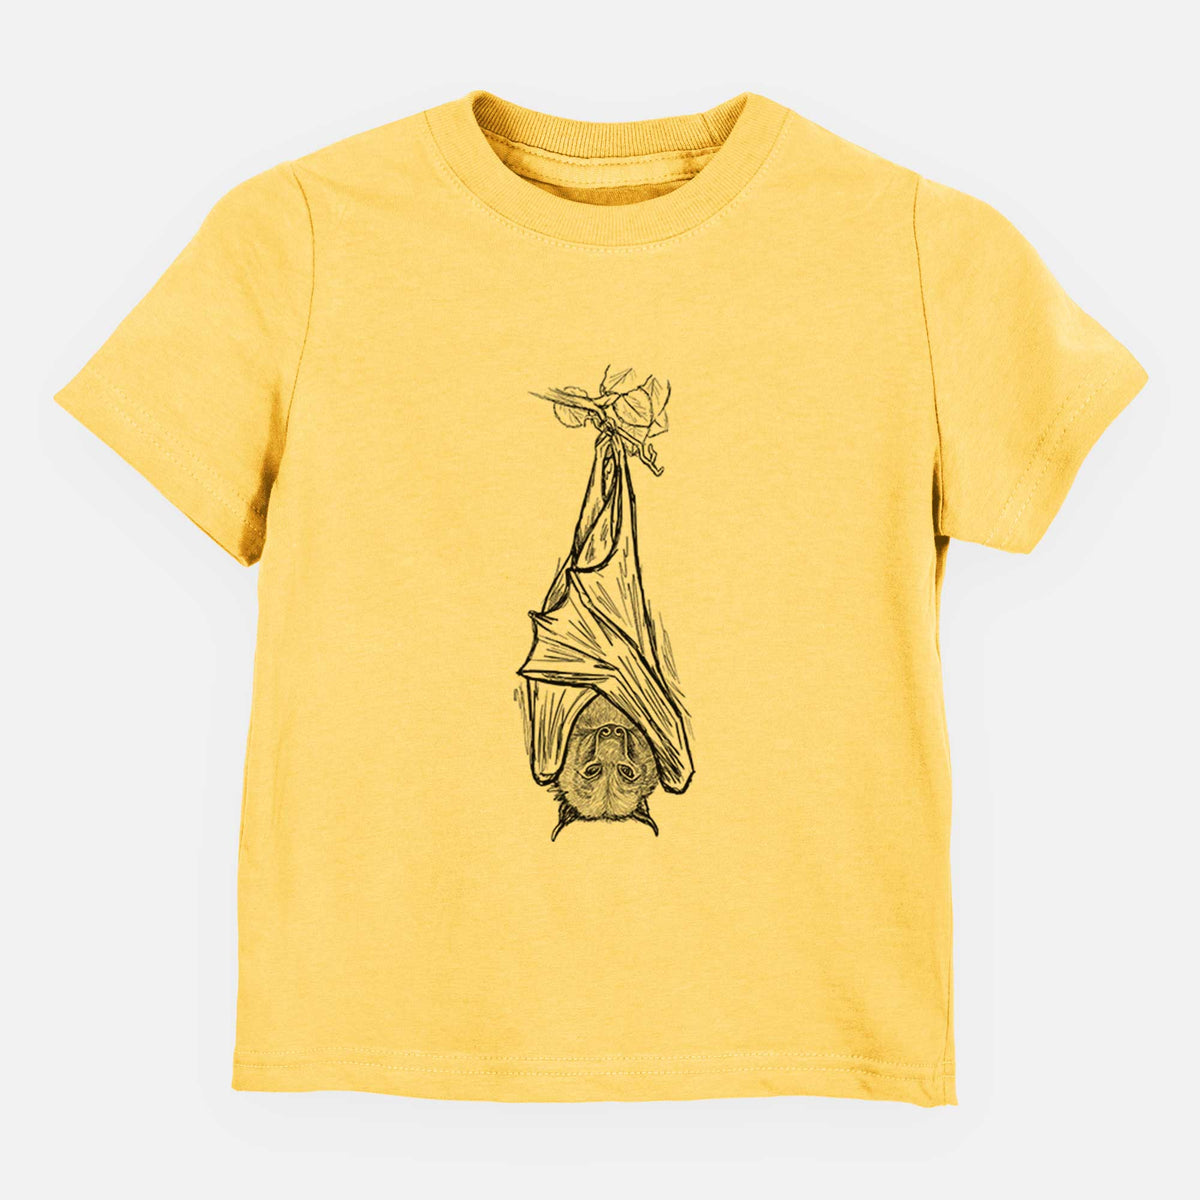 Pteropus vampyrus - Large Flying Fox - Kids Shirt